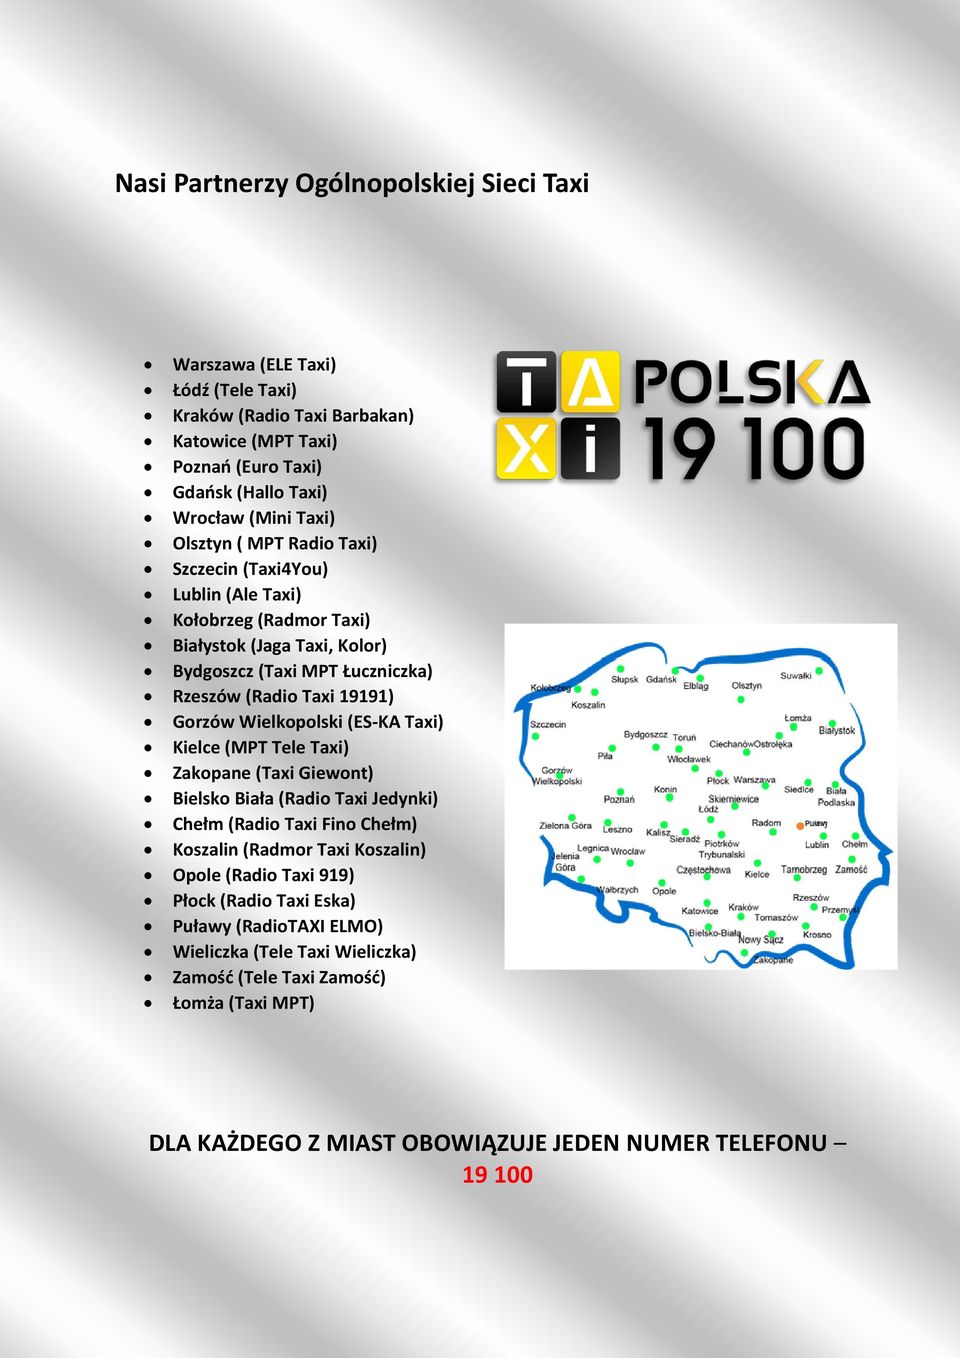 Wielkopolski (ES-KA Taxi) Kielce (MPT Tele Taxi) Zakopane (Taxi Giewont) Bielsko Biała (Radio Taxi Jedynki) Chełm (Radio Taxi Fino Chełm) Koszalin (Radmor Taxi Koszalin) Opole (Radio